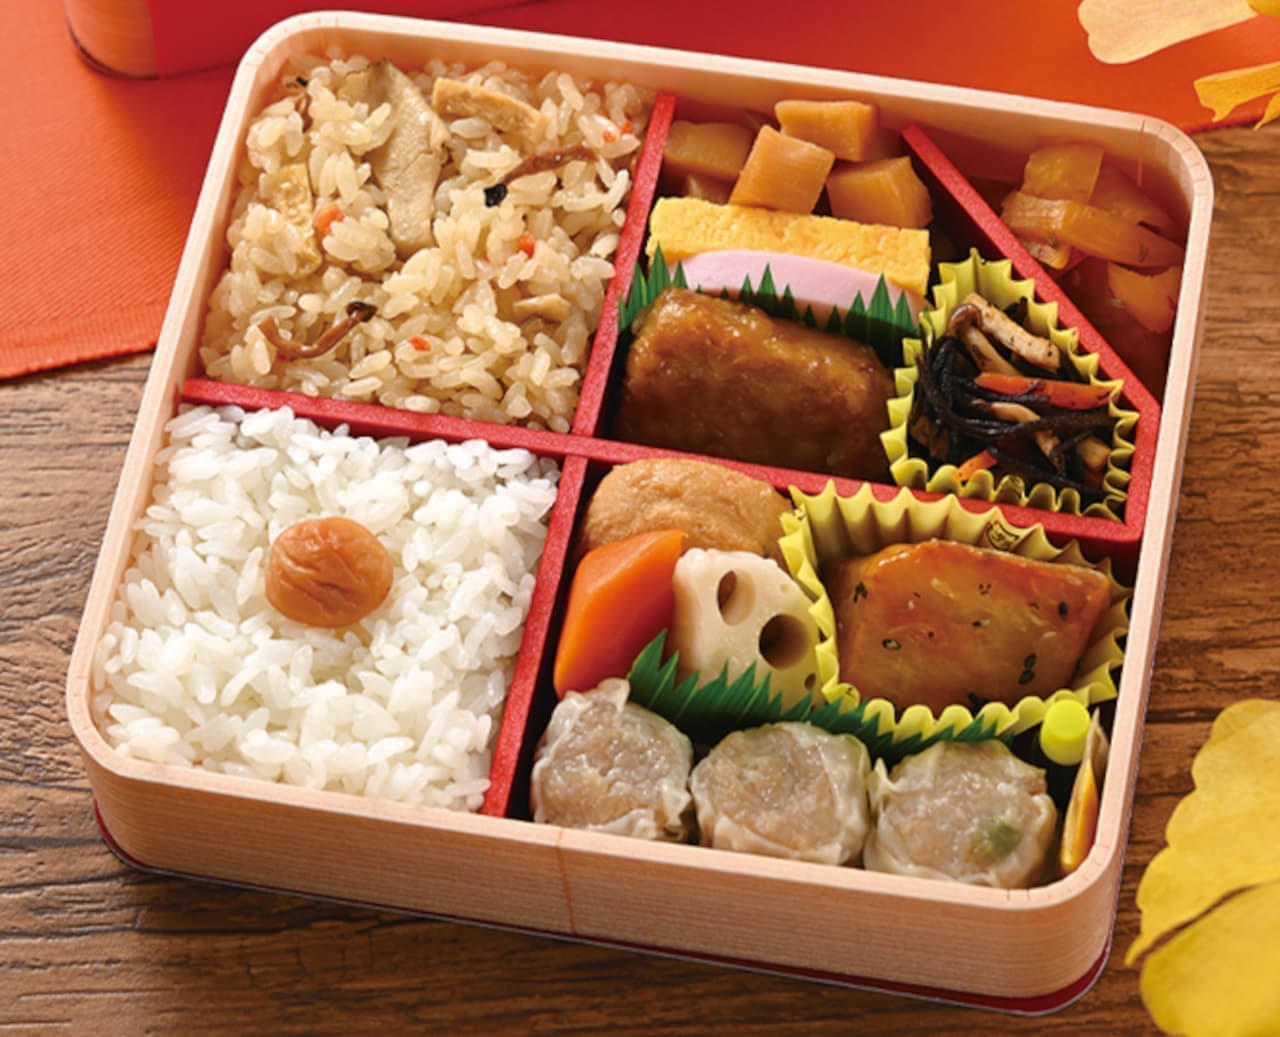 Saki Yoken "Autumn Kanagawa Ajiwai Lunchbox